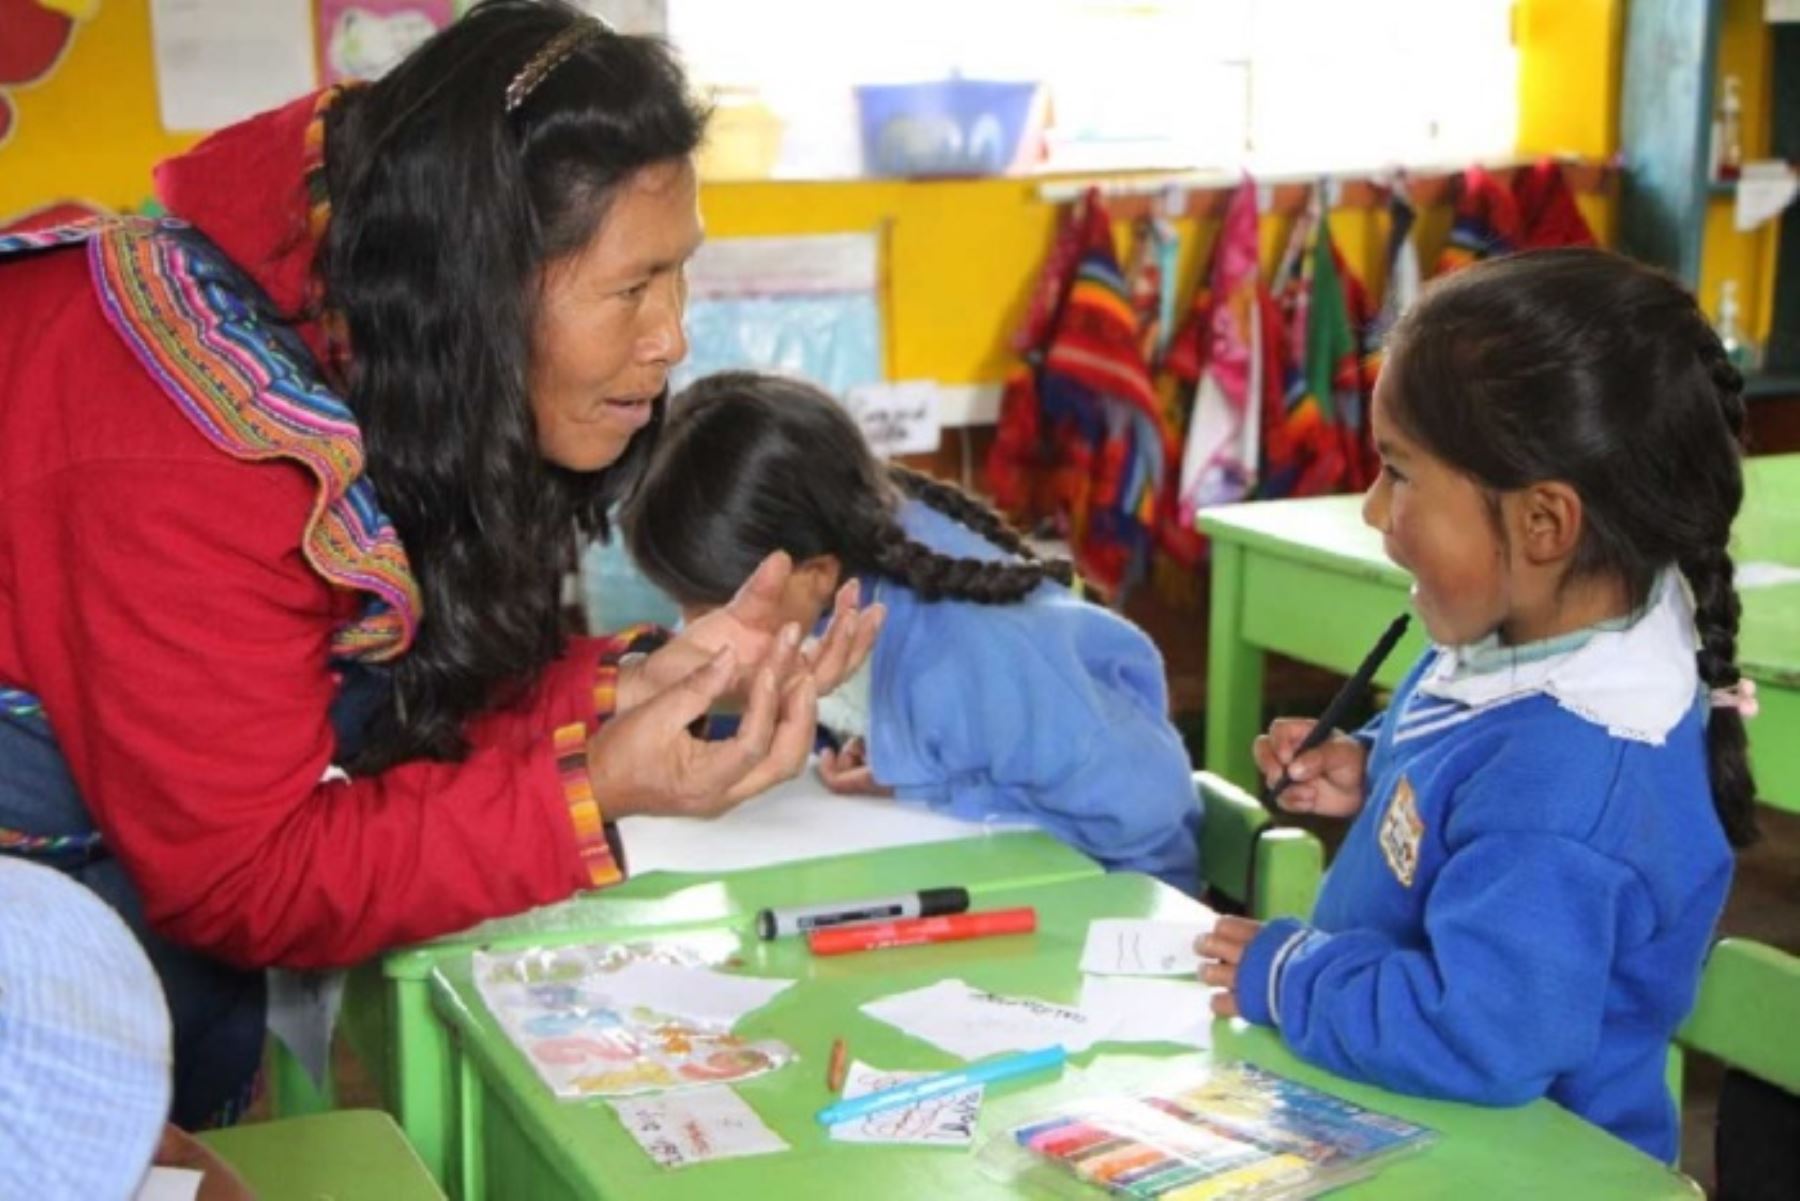 Además del castellano y la lengua de señas peruana, actualmente alrededor de cuatro millones de personas hablan una de las 48 lenguas originarias, como el quechua, aimara, ashaninka, awajún, wampis, shipibo, shawi o yine.